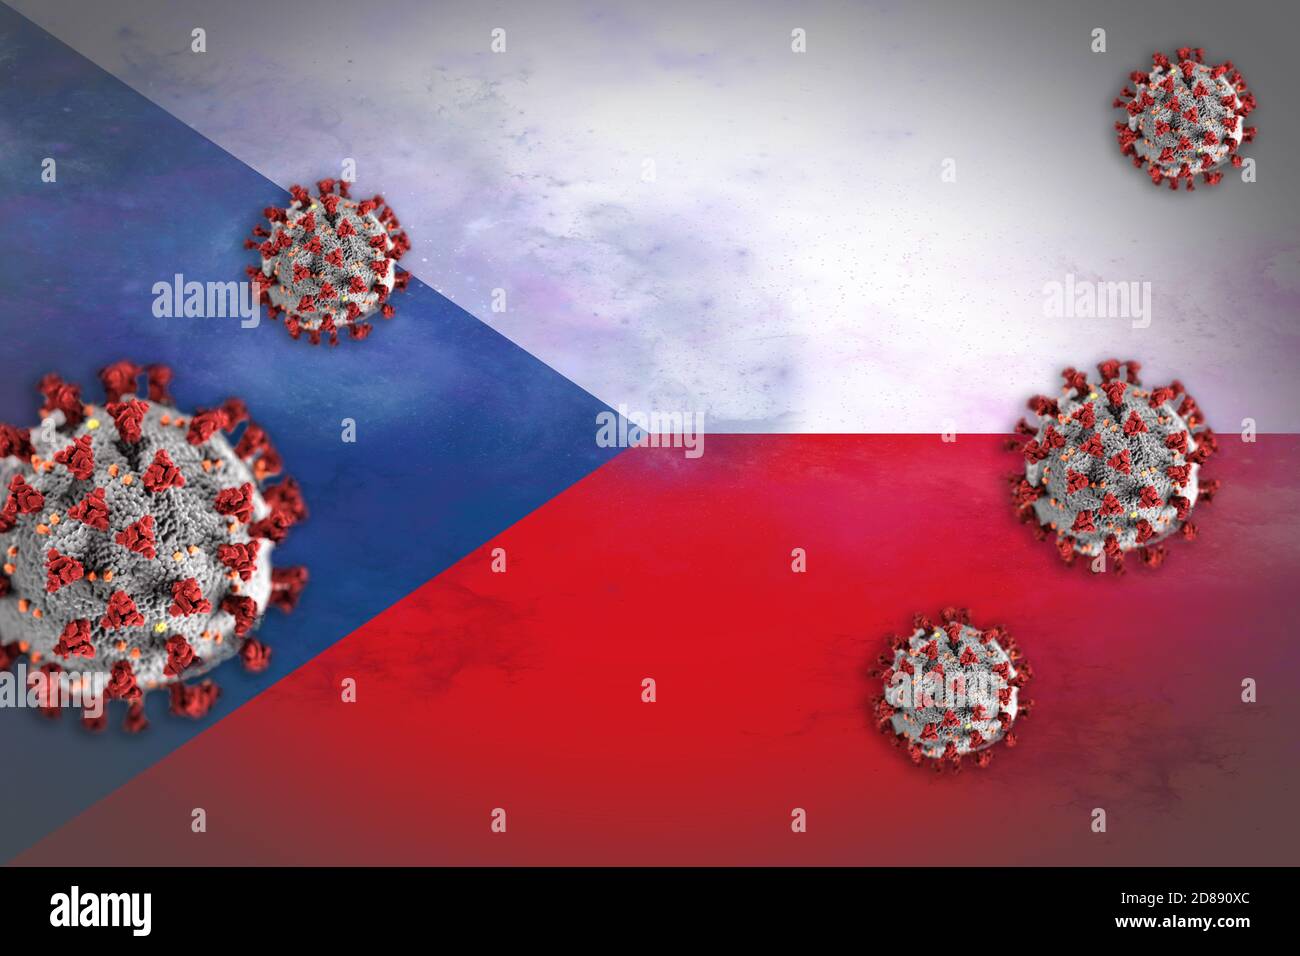 Konzeptdarstellung des Coronavirus oder Covid-19-Partikeln, die die Flagge Tschechiens überschatteten und den Ausbruch symbolisierten. Stockfoto